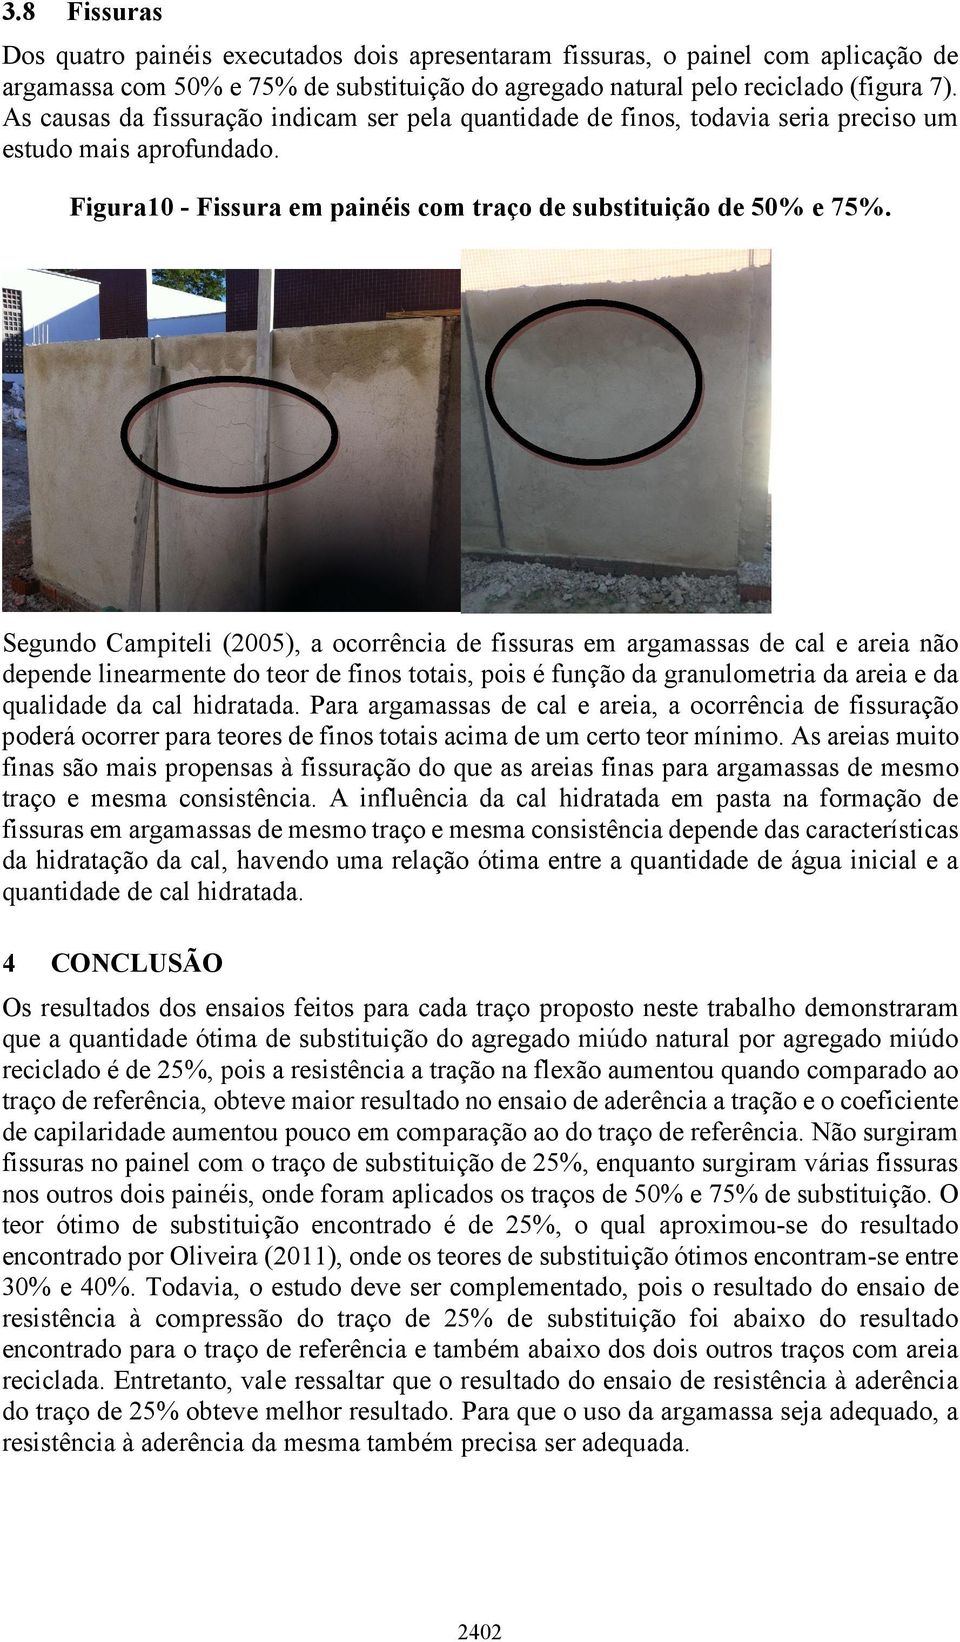 Segundo Campiteli (2005), a ocorrência de fissuras em argamassas de cal e areia não depende linearmente do teor de finos totais, pois é função da granulometria da areia e da qualidade da cal